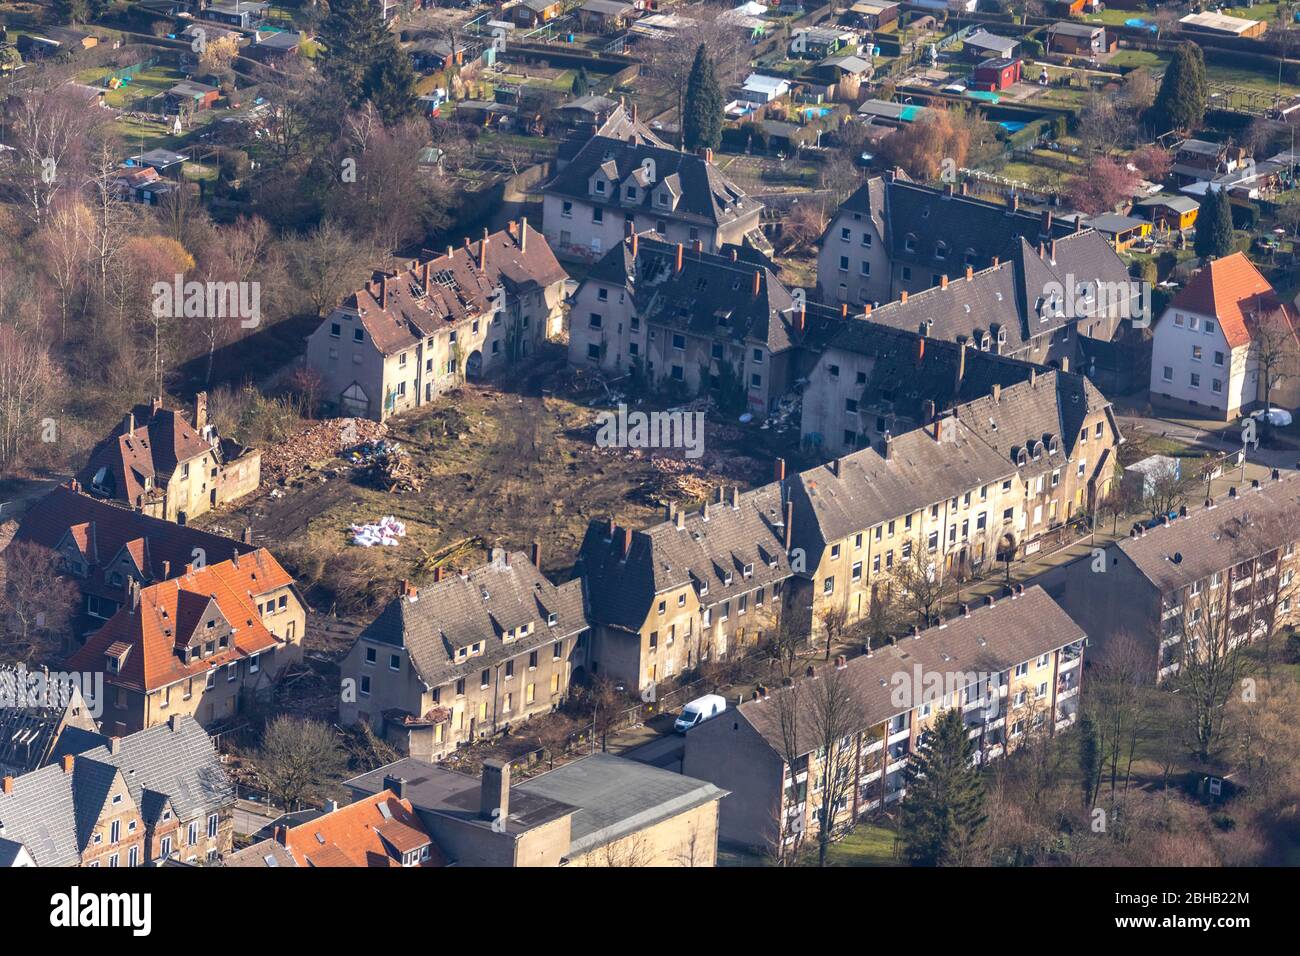 Aerial view, house ruins Schlägelstraße, historic settlement, Zweckel, Gladbeck, Ruhr area, North Rhine-Westphalia, Germany Stock Photo